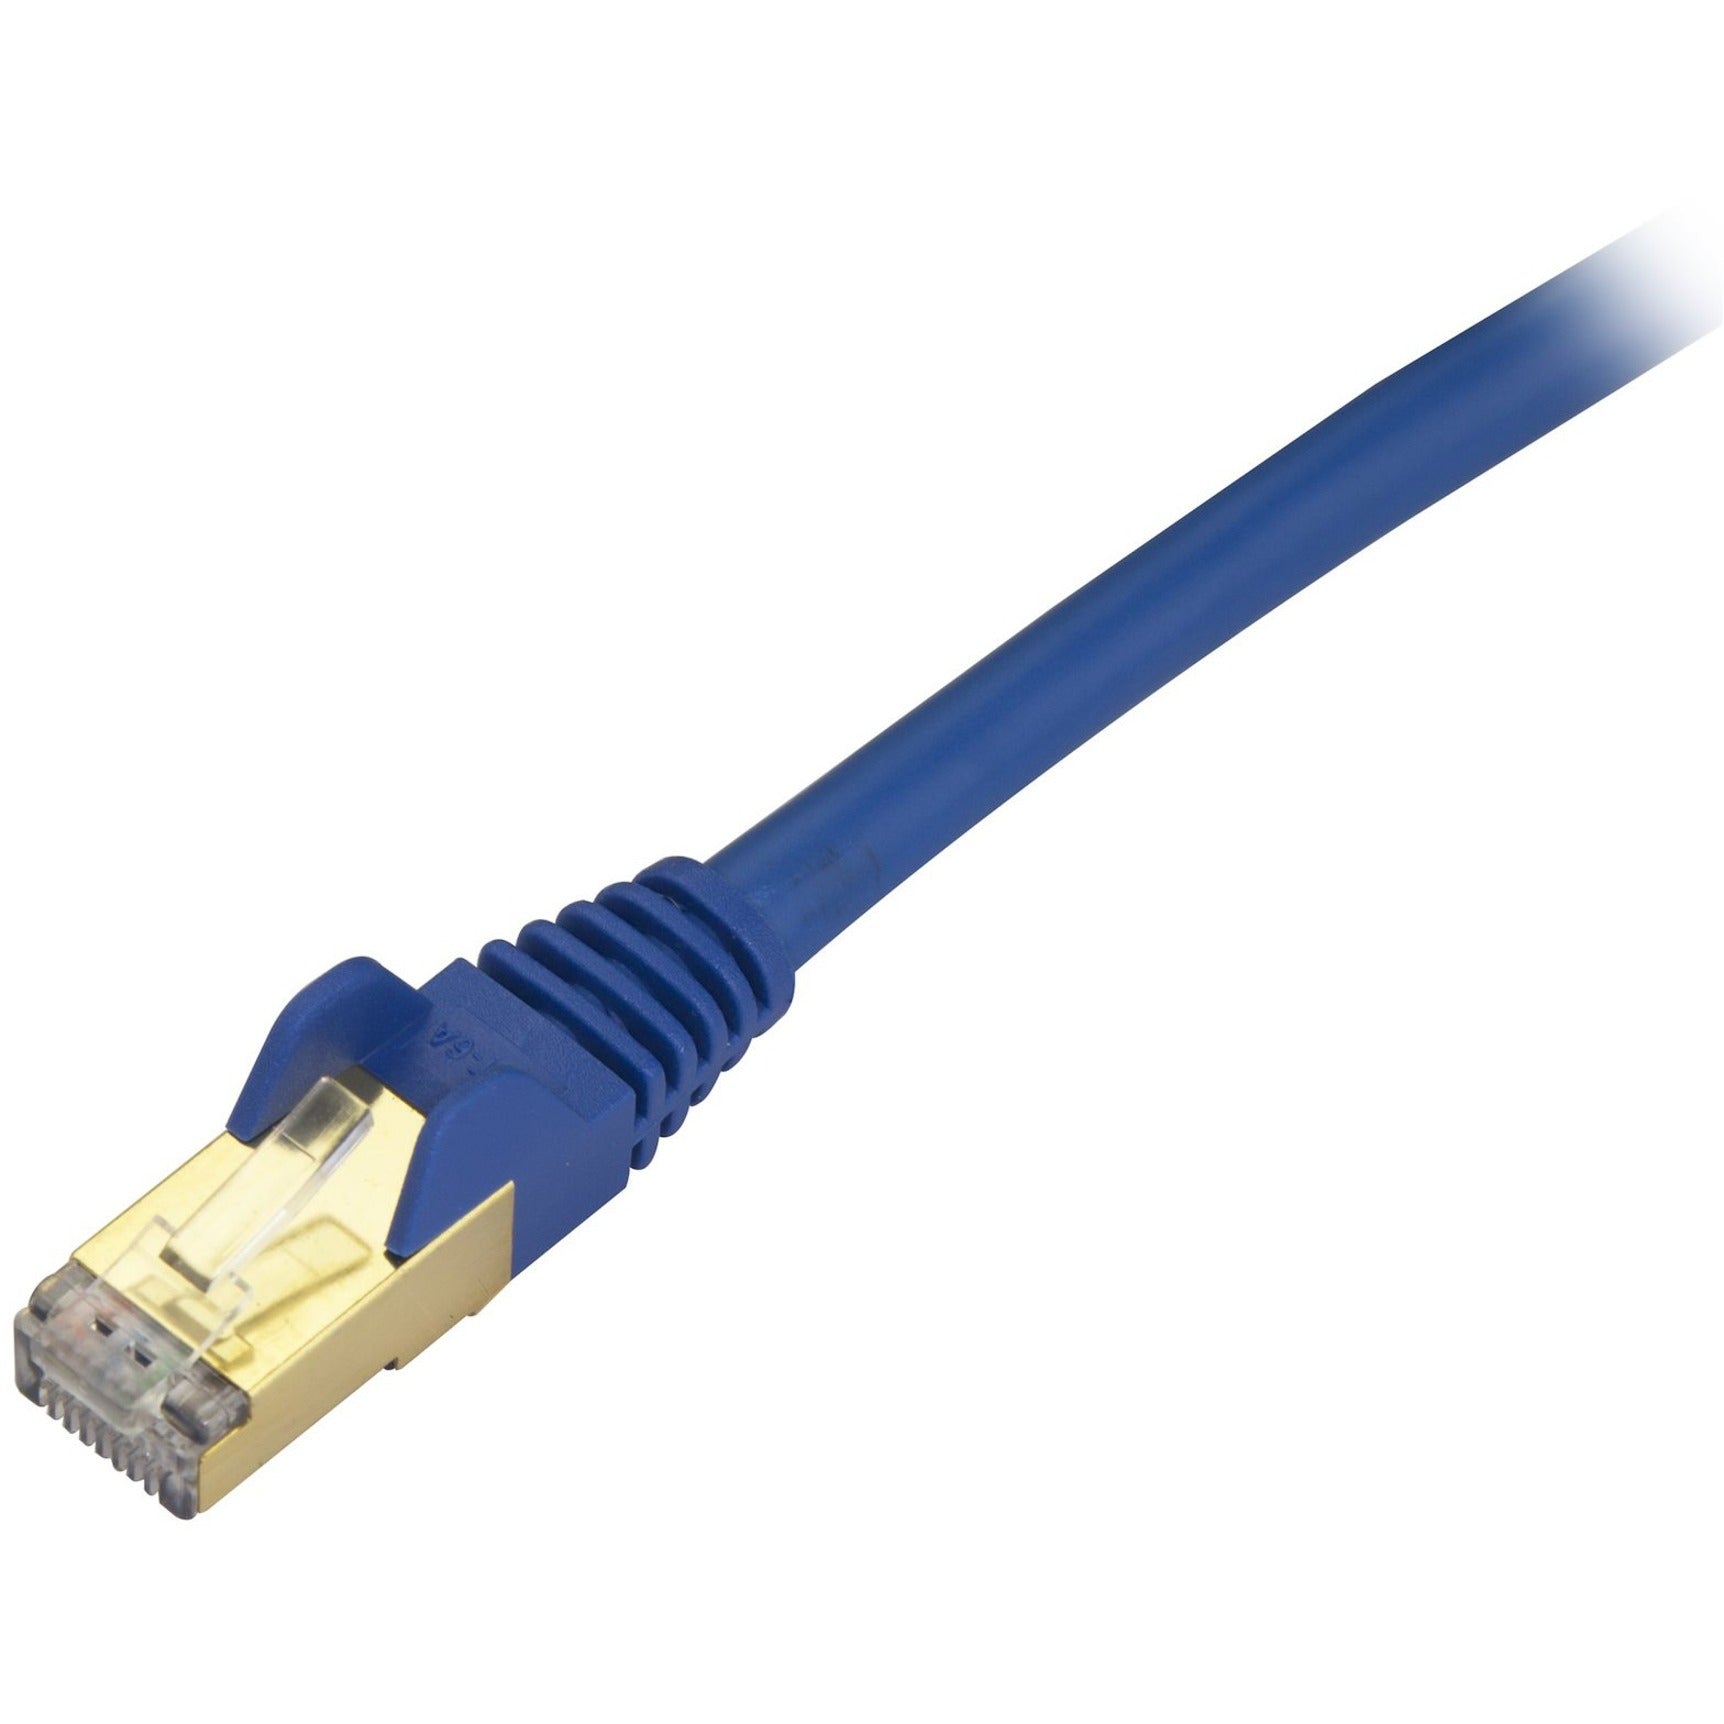 StarTech.com C6ASPAT6INBL Cat6a Ethernet Patch Cable - Shielded (STP) - 6 in., Blue, Short Ethernet Cord